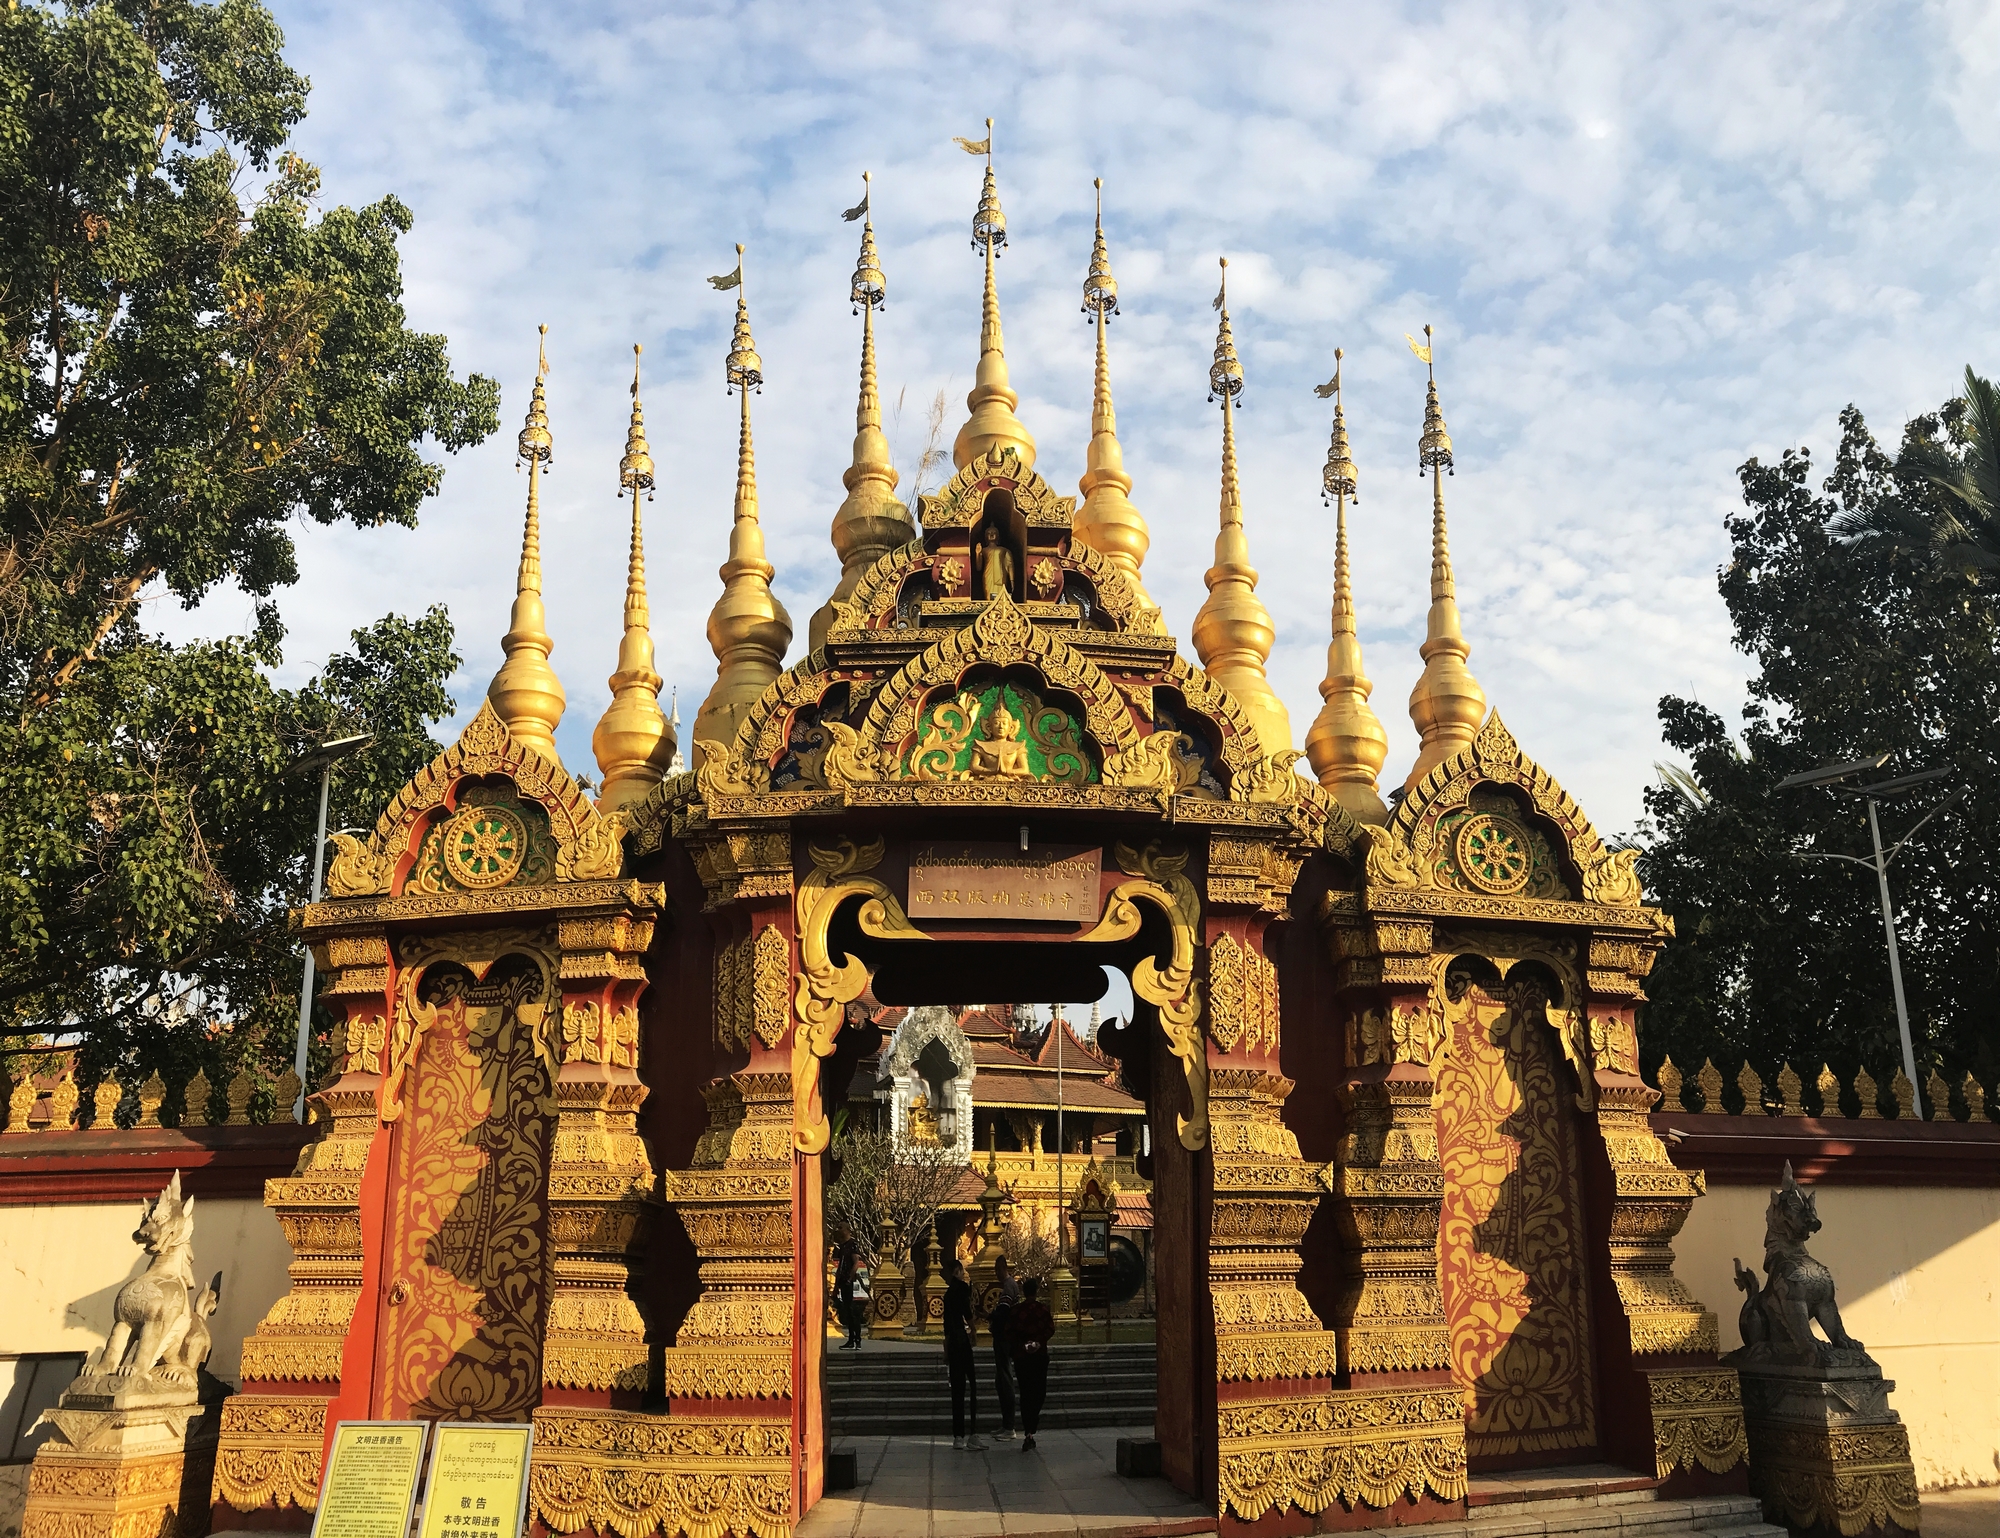 即是朝圣之地,又是免费景点,良心推荐西双版纳的总佛寺